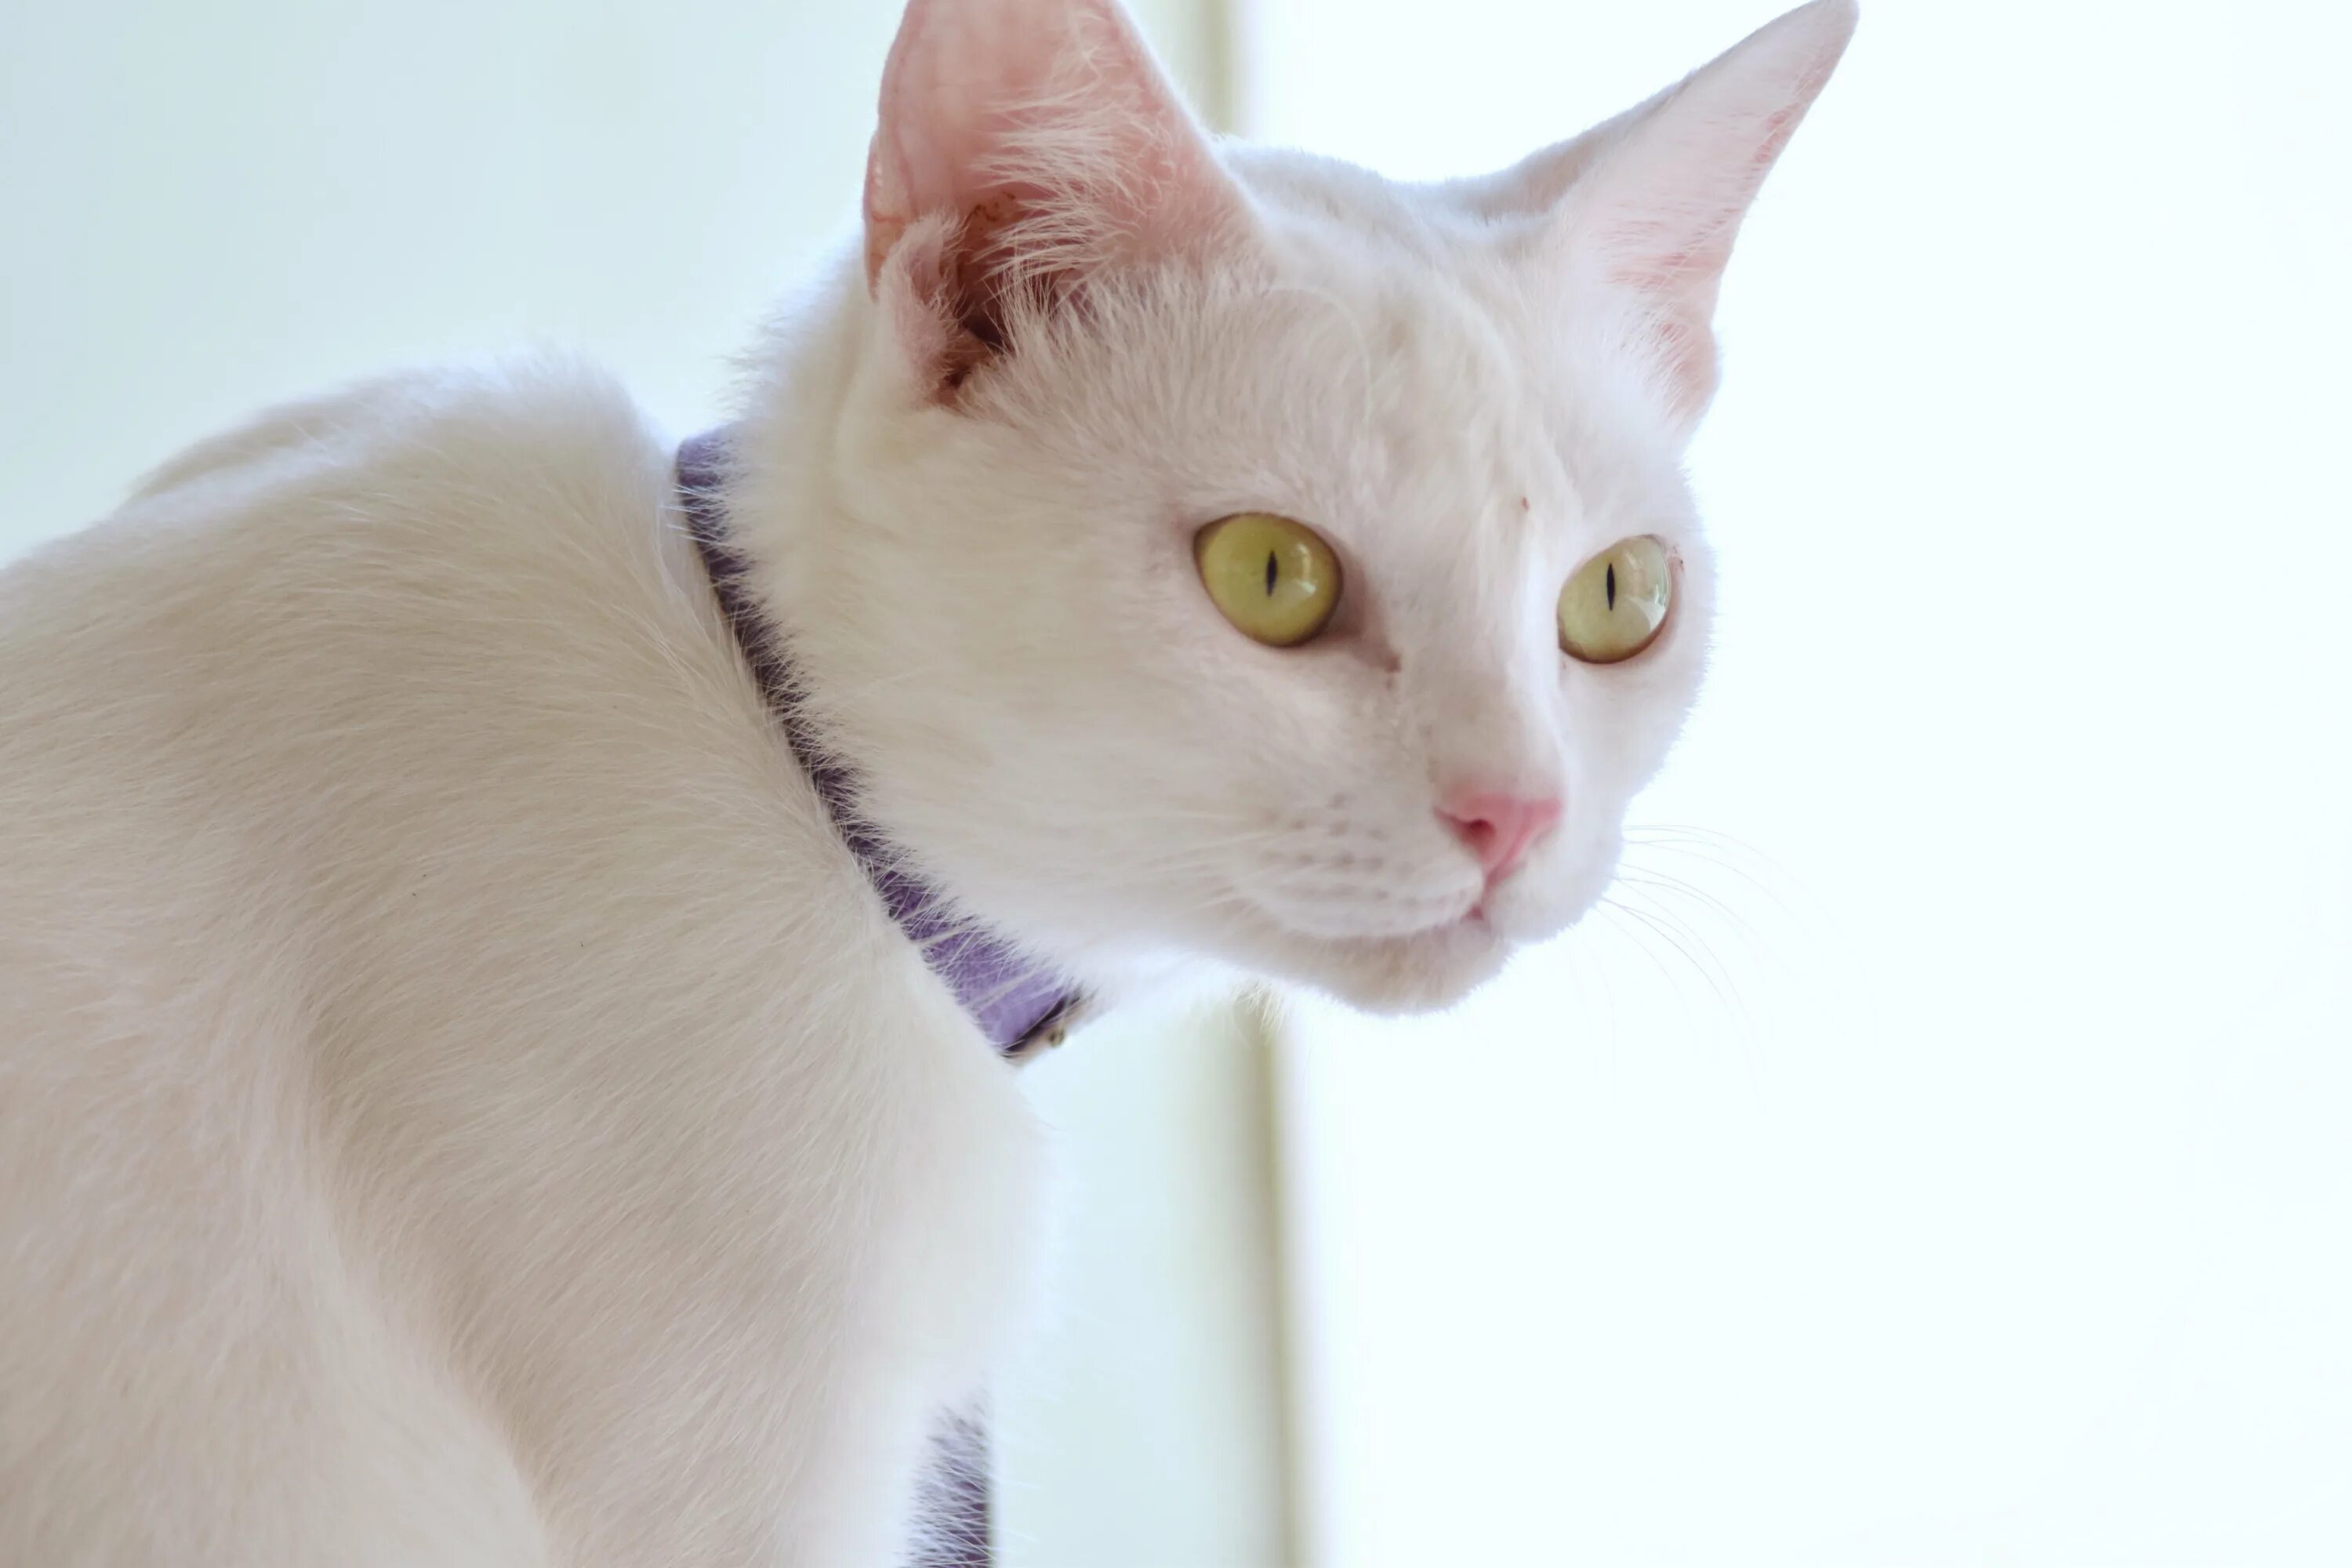 Кот с желтыми глазами порода. Европейская короткошерстная кошка белая. Турецкая ангора короткошерстная. Американская короткошёрстная кошка белая. Европейская гладкошерстная кошка белая.